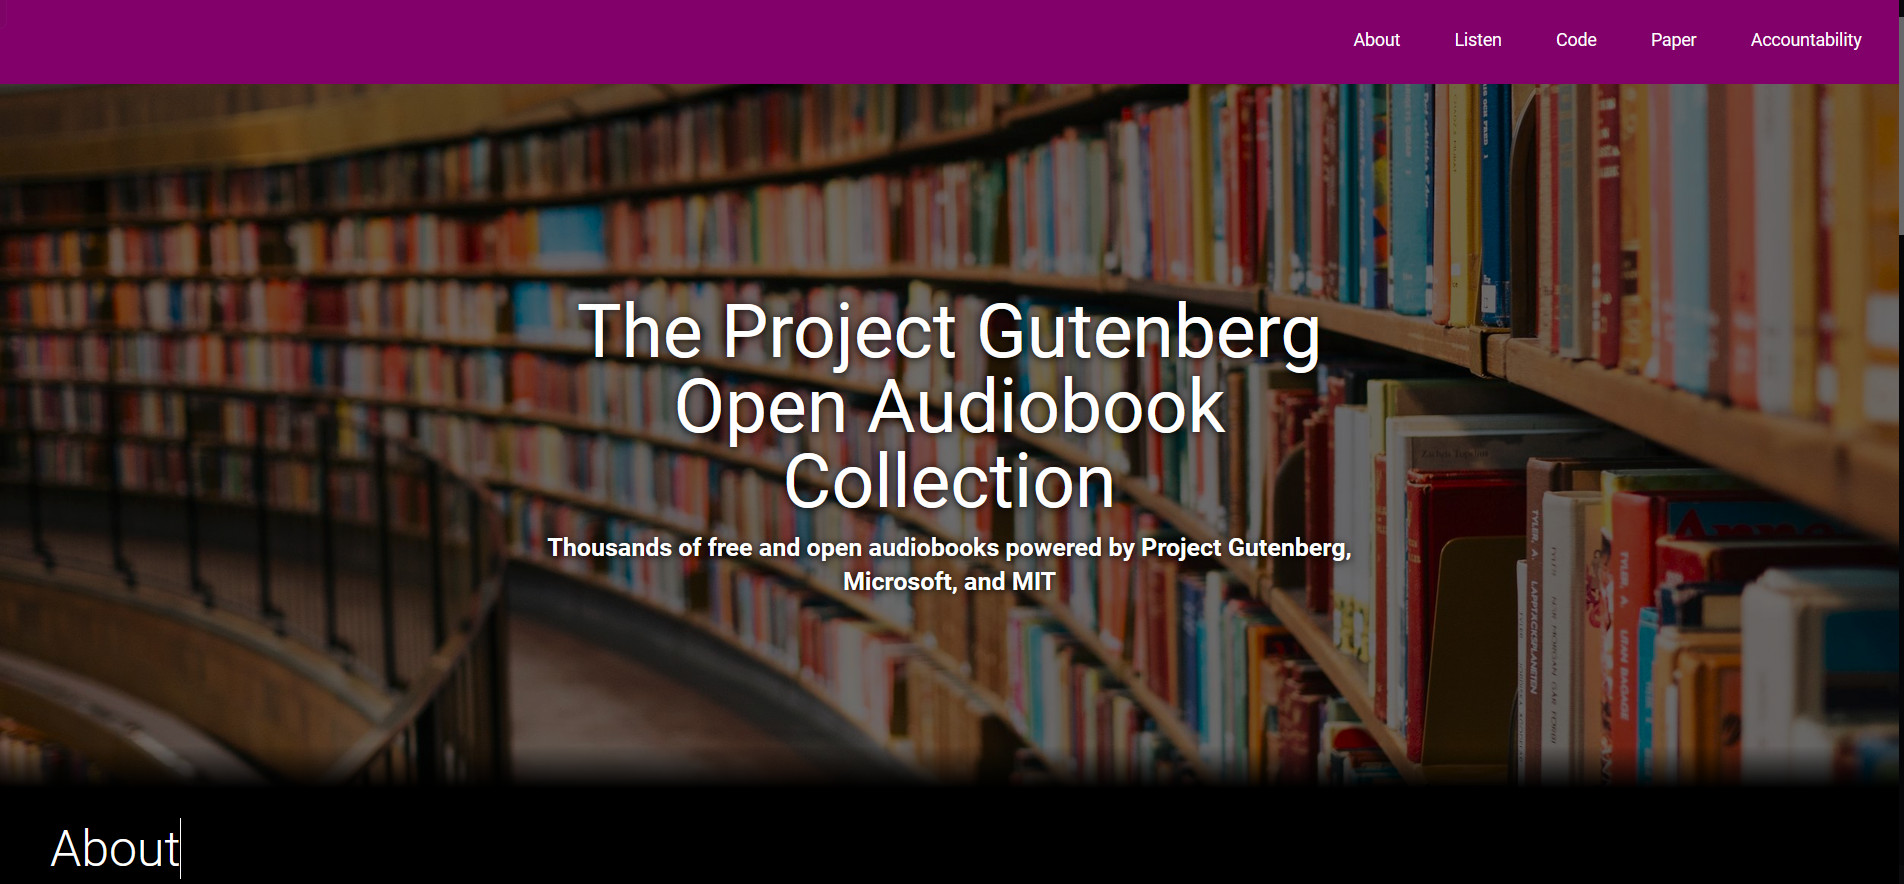 古腾堡计划开放式有声读物集